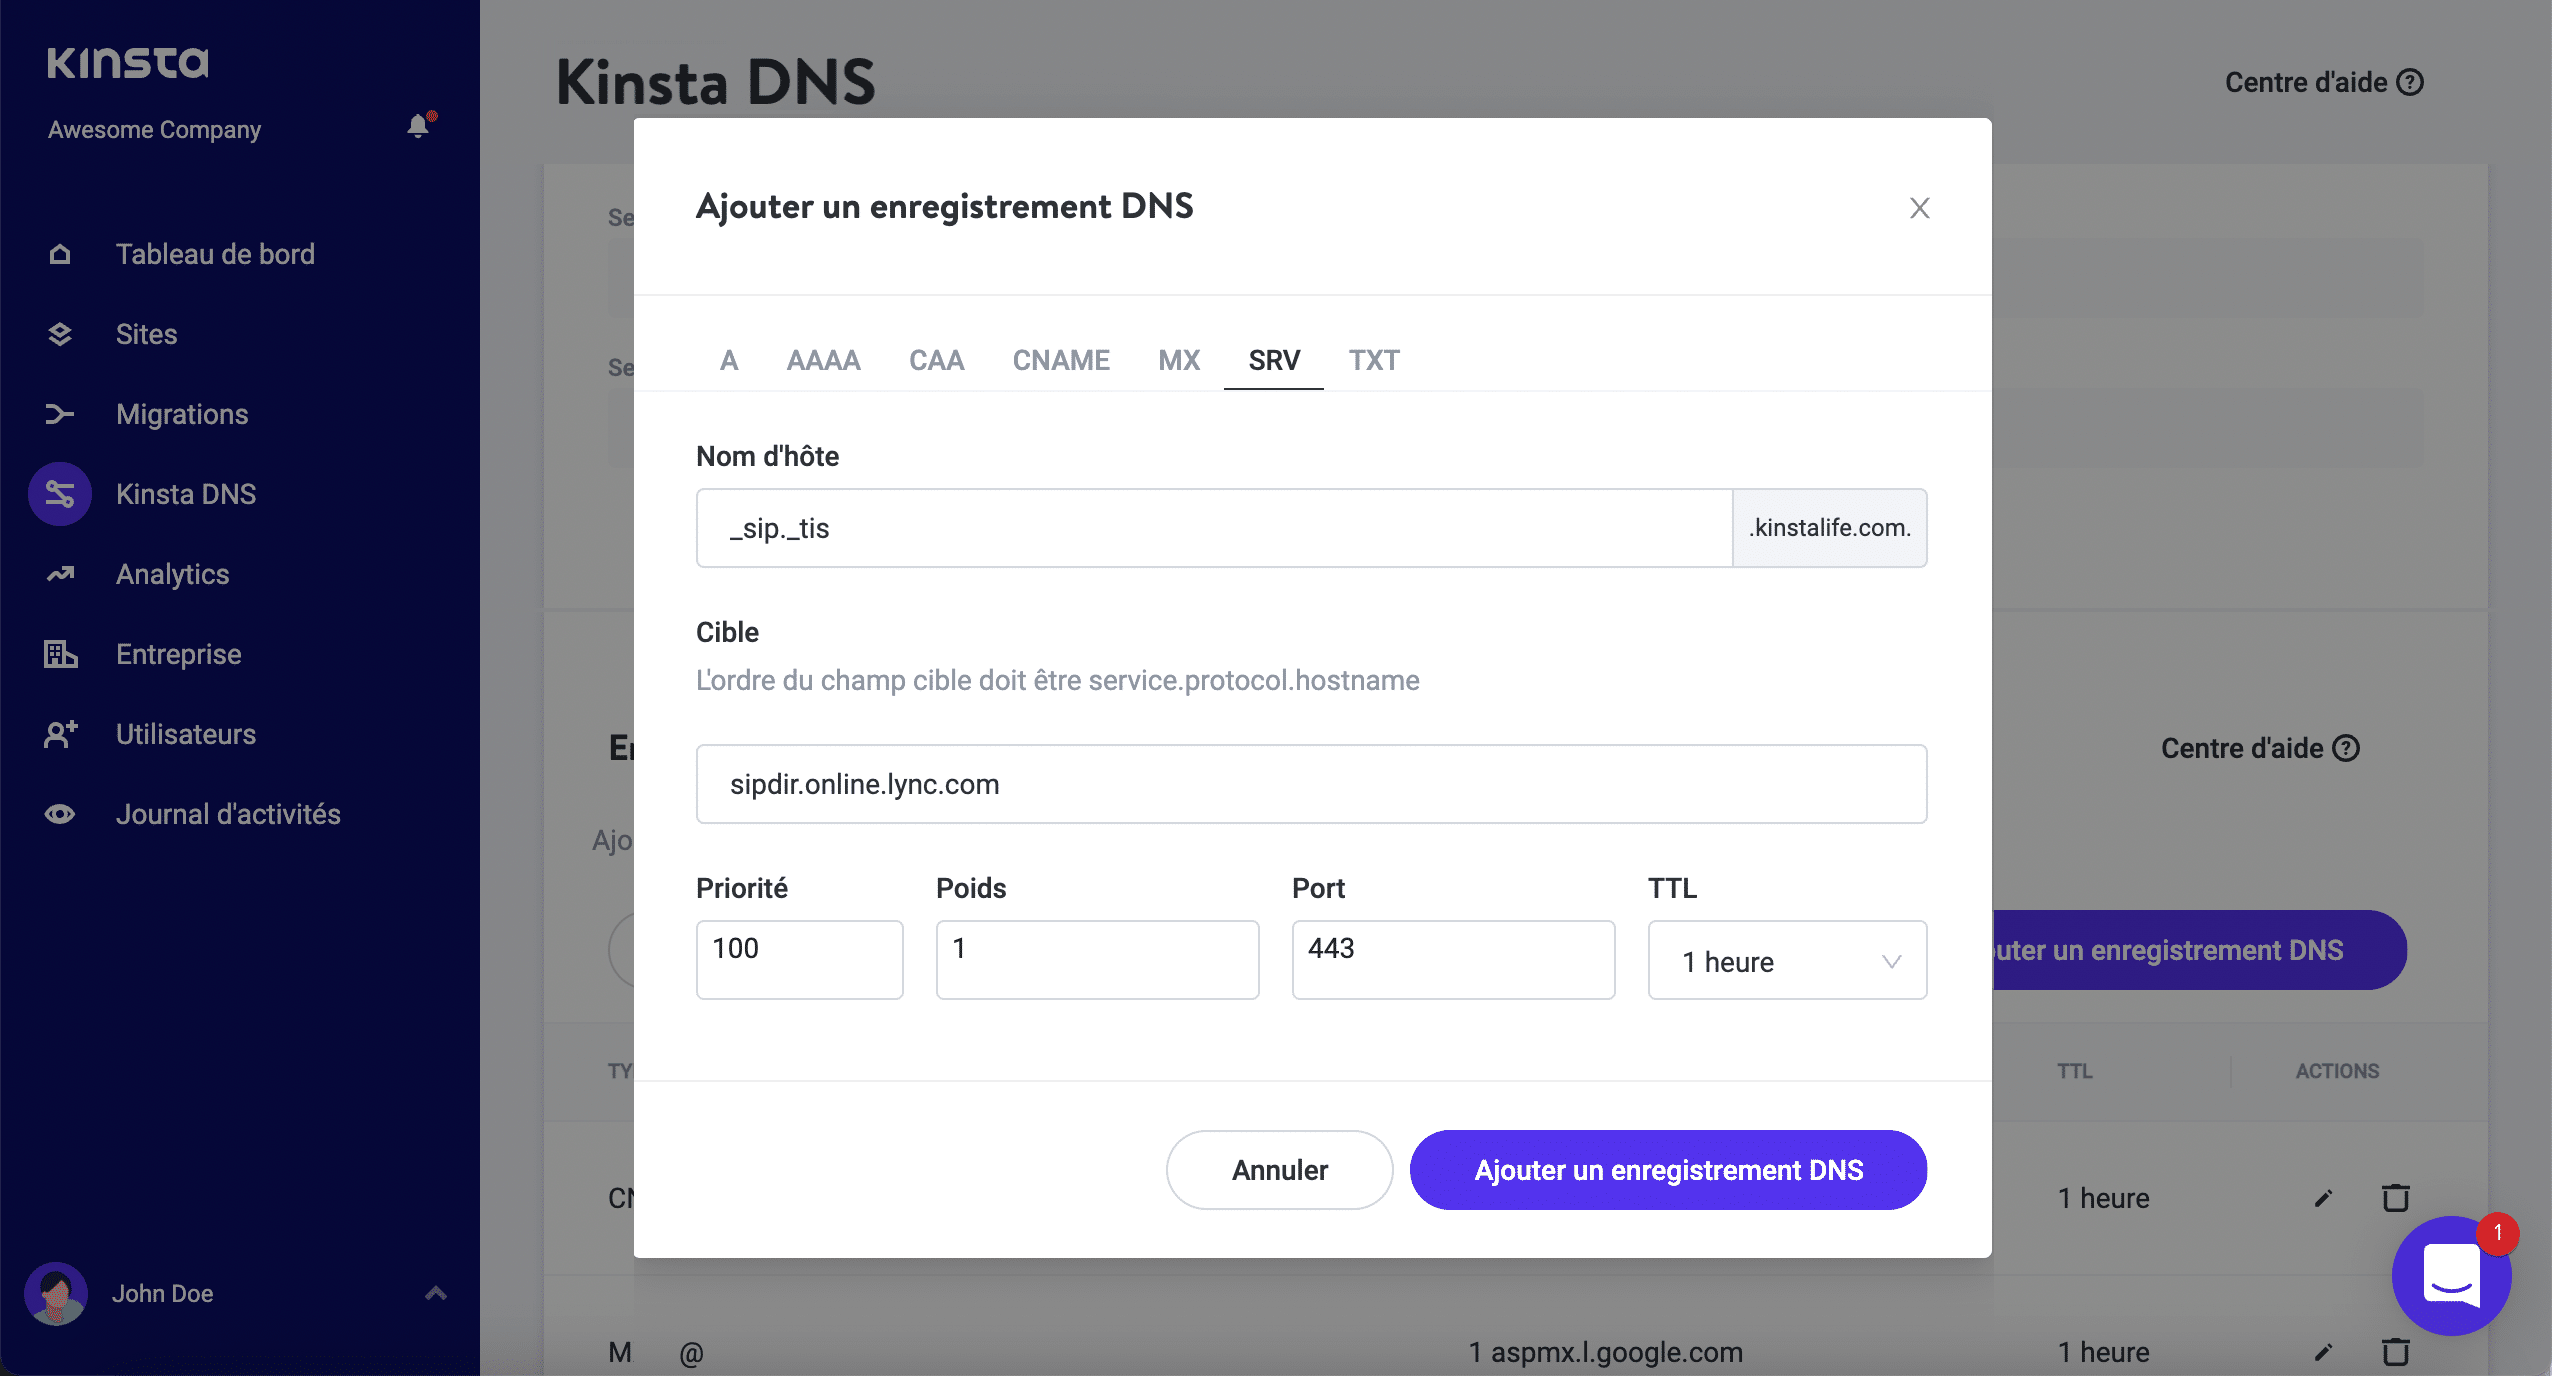 Ajouter un enregistrement SRV dans Kinsta DNS.